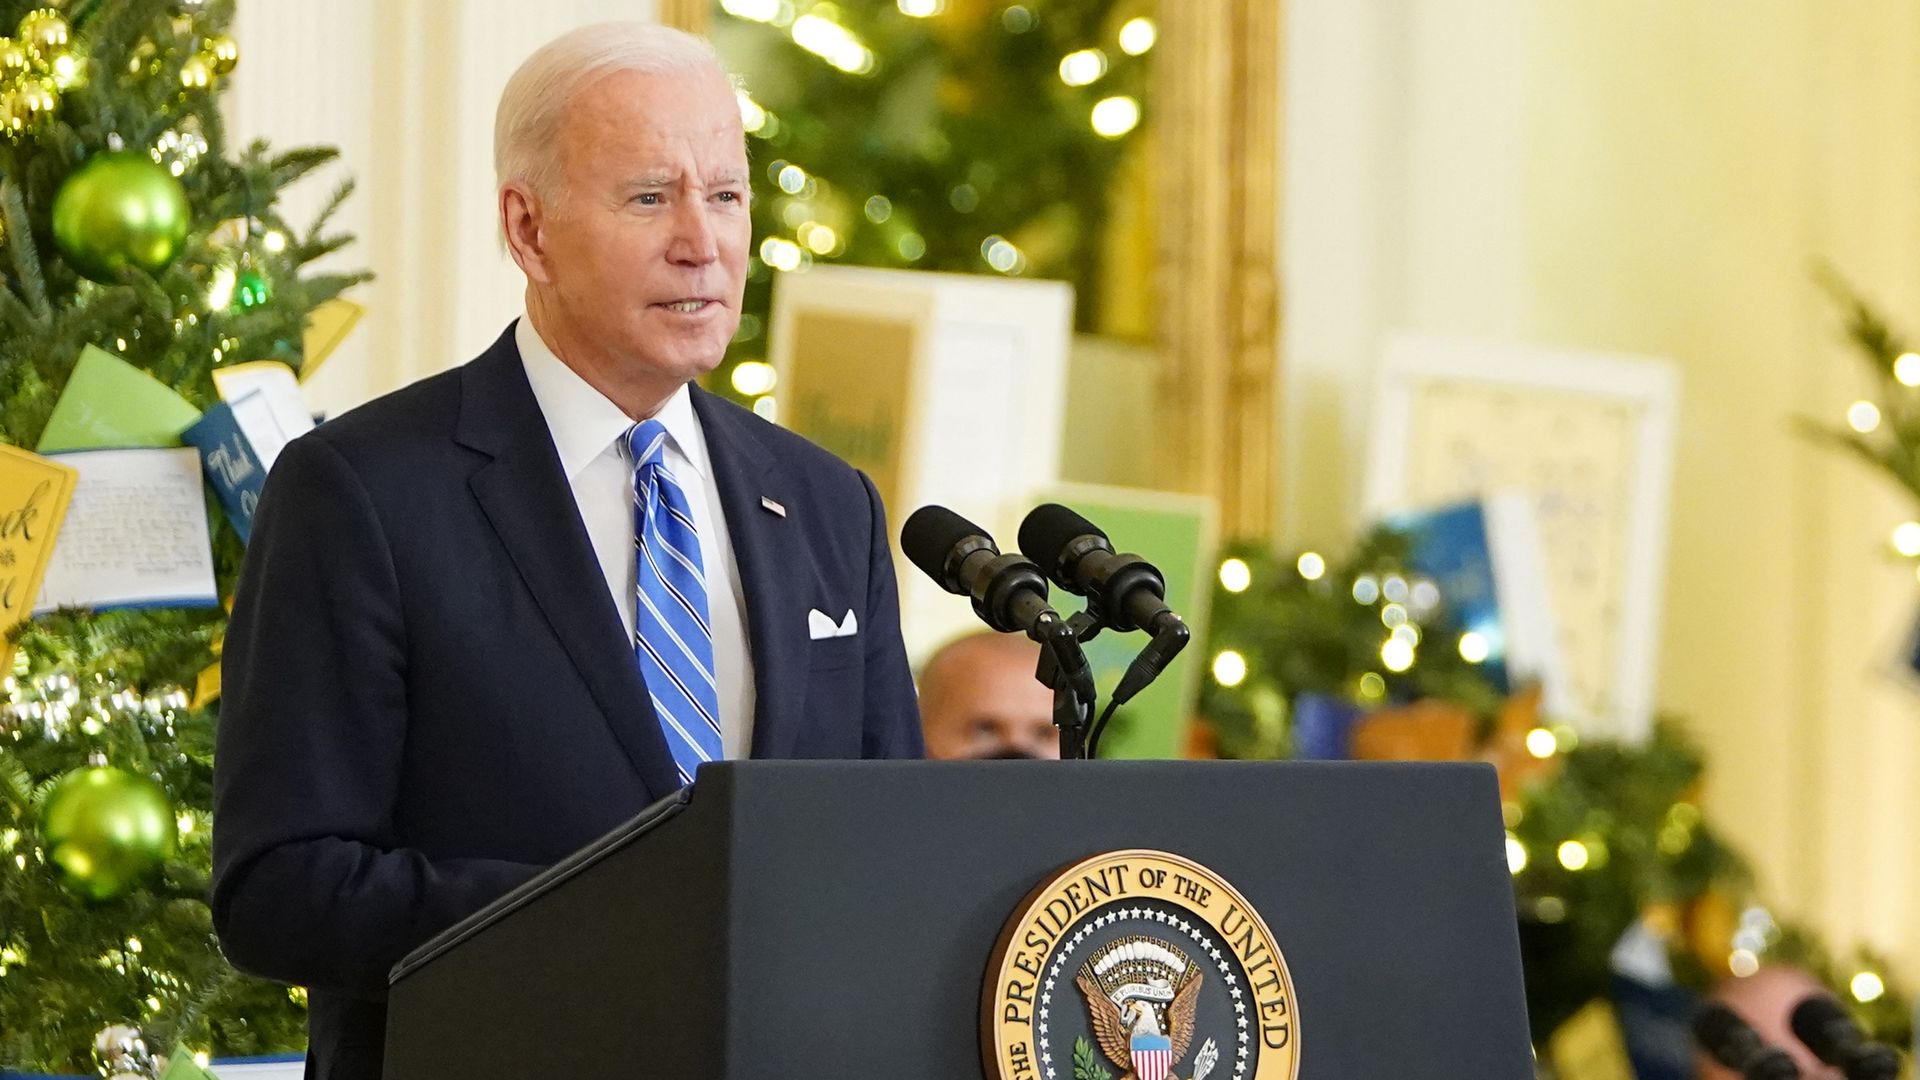 President Biden speaking at the Medal of Honor ceremony on Thursday.